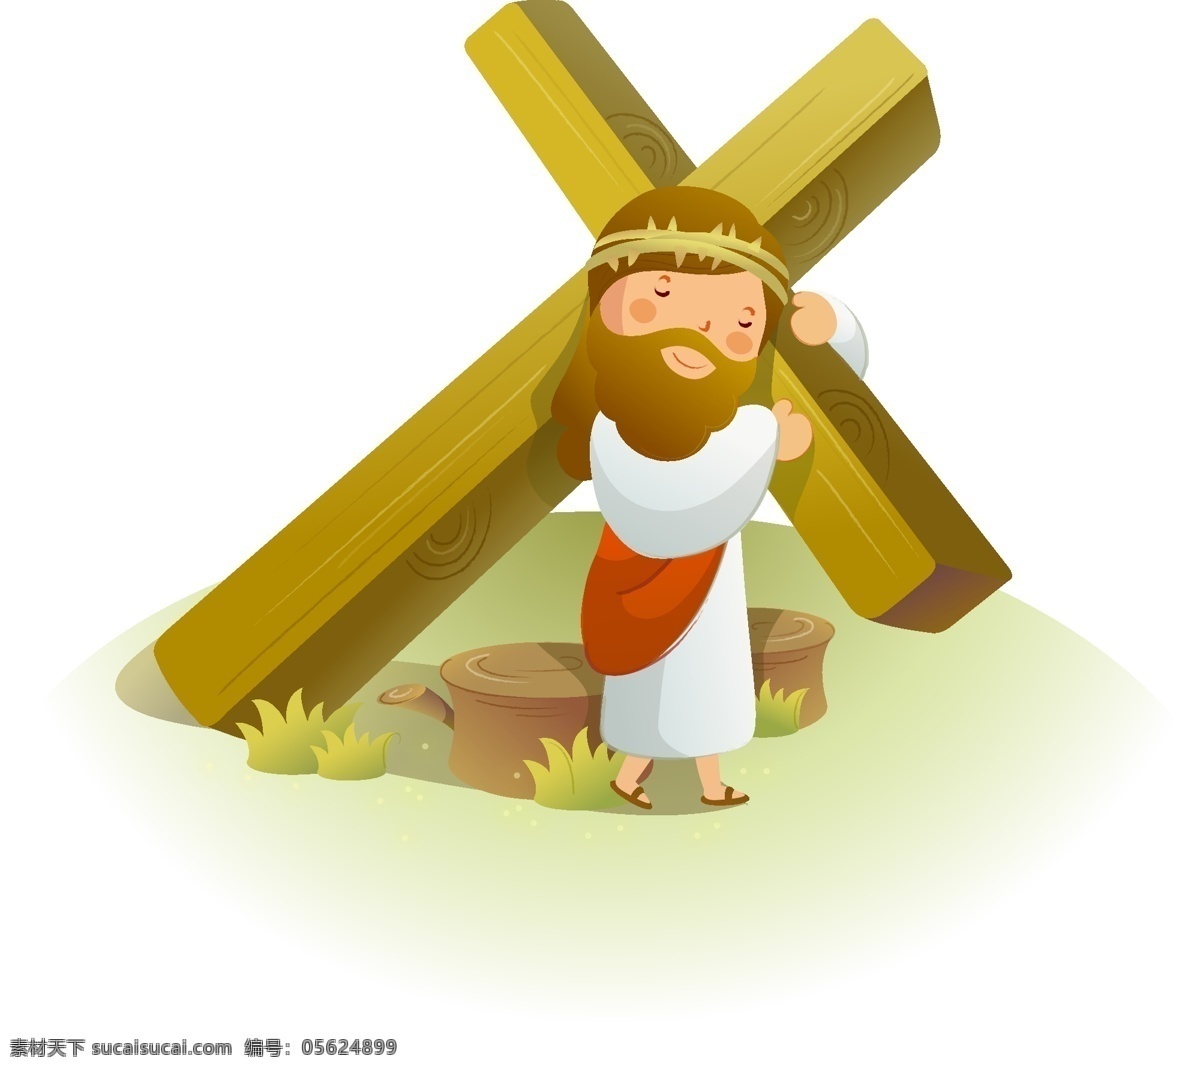 耶稣抗十字架 耶稣 十字架 安详 沉默 估计 野外 矢量 古代 服饰 其他人物 矢量人物